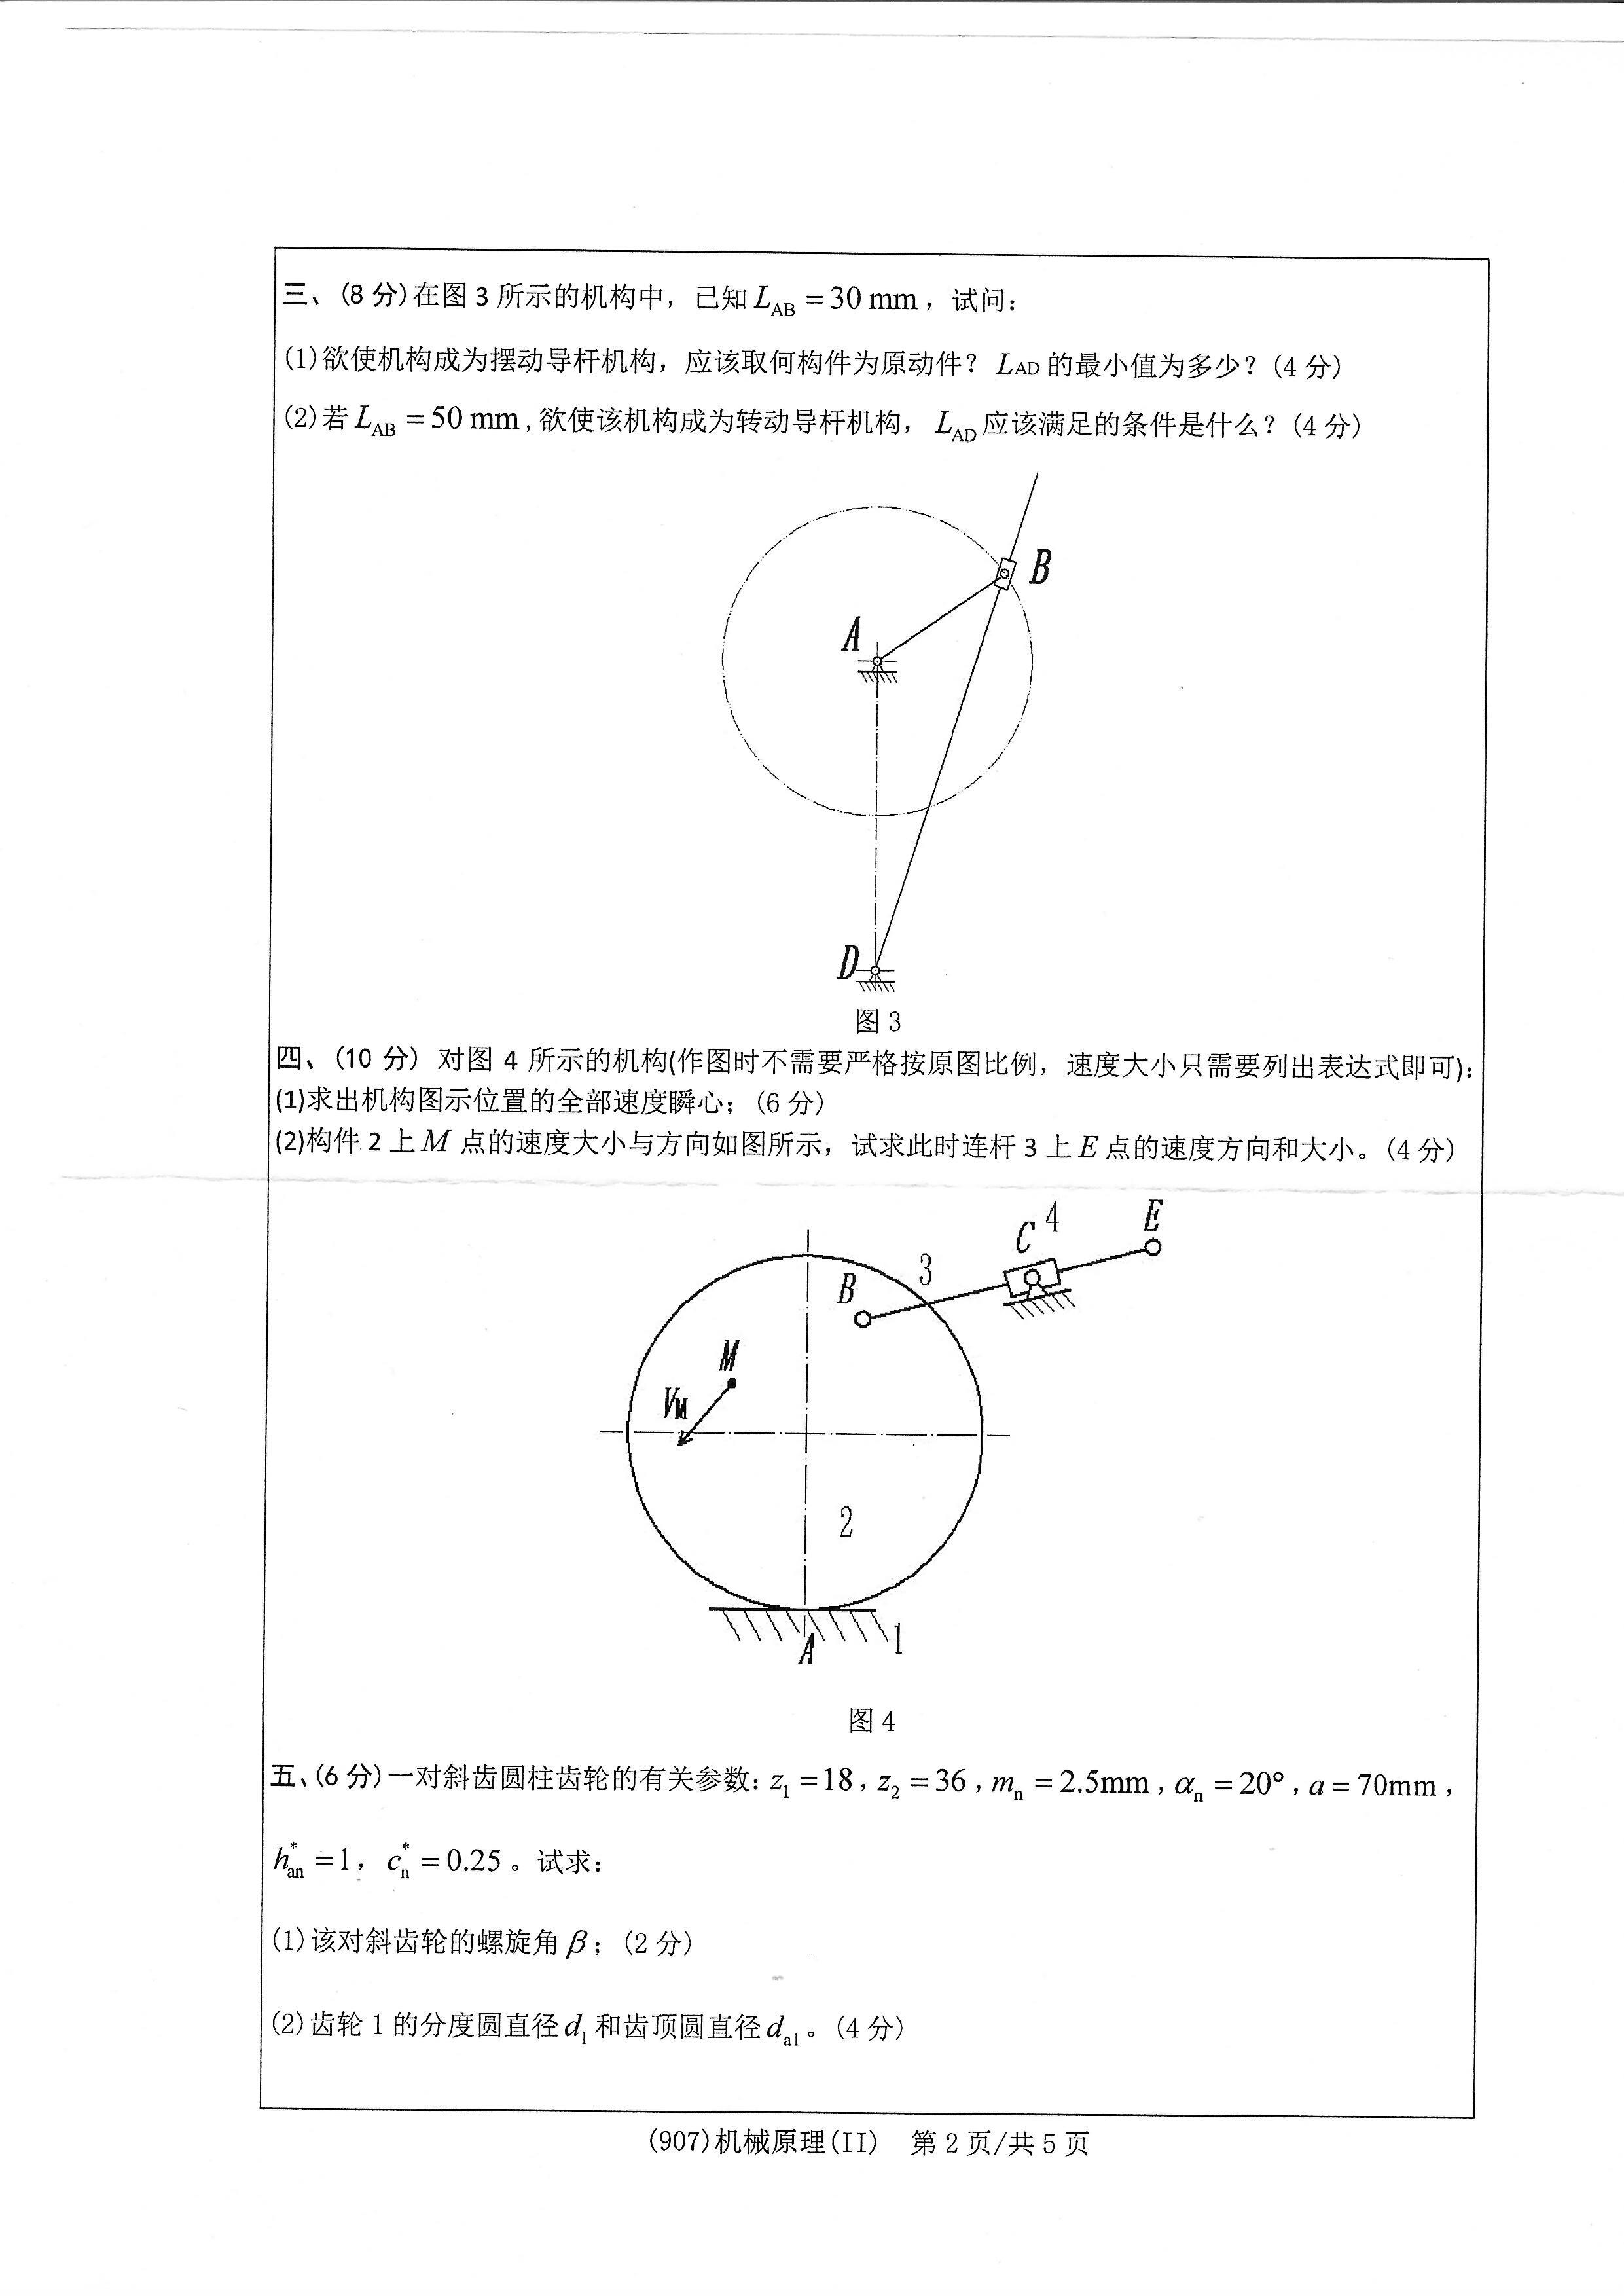 907机械原理（II）2020年考研初试试卷真题（浙江工业大学）